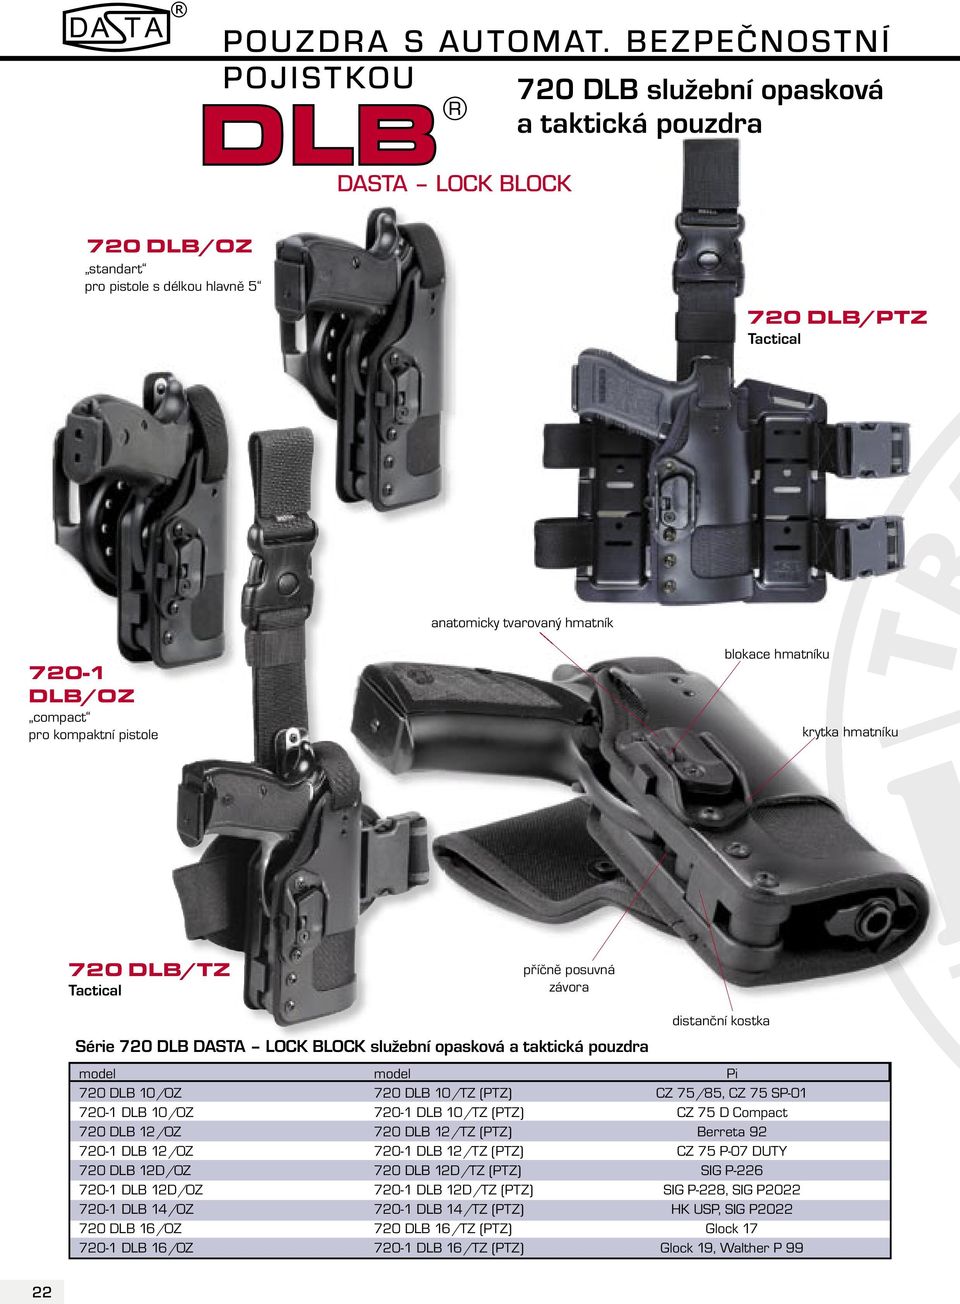 DLB/OZ compact pro kompaktní pistole blokace hmatníku krytka hmatníku 720 DLB/TZ Tactical příčně posuvná závora Série 720 DLB DASTA LOCK BLOCK služební opasková a taktická pouzdra distanční kostka